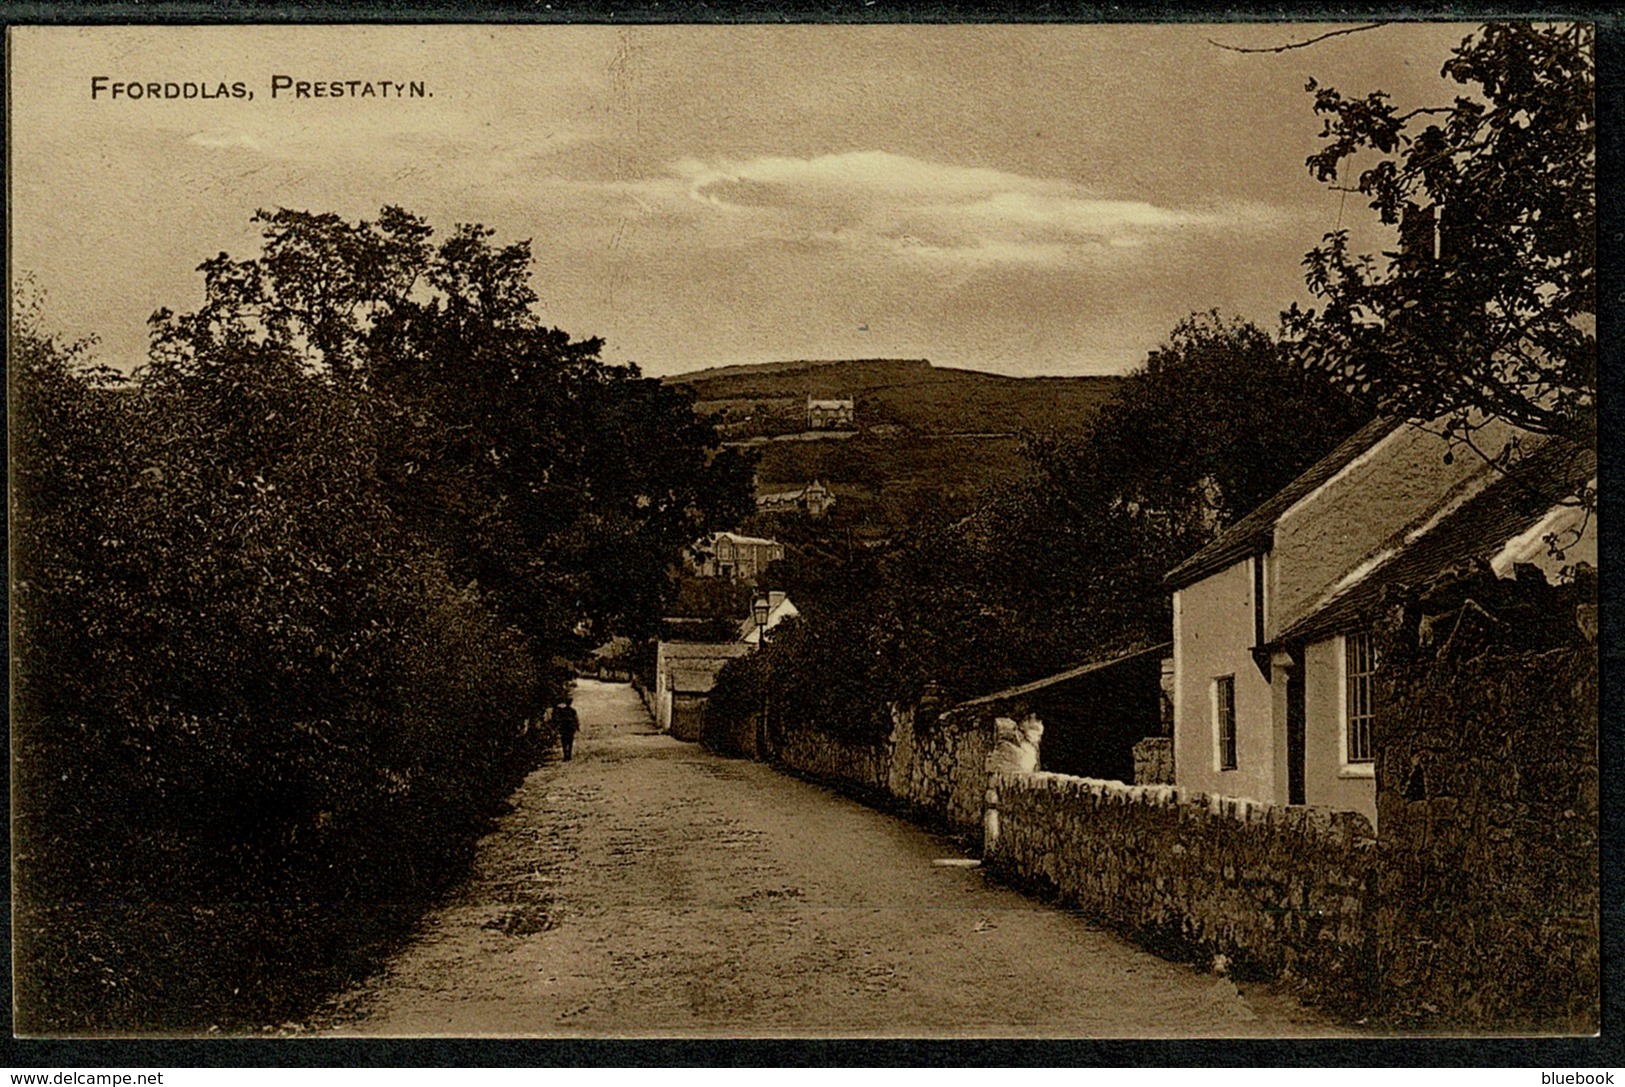 Ref 1293 - Early Postcard - Ffordlas Village Prestatyn - Denbighshire Wales - Denbighshire